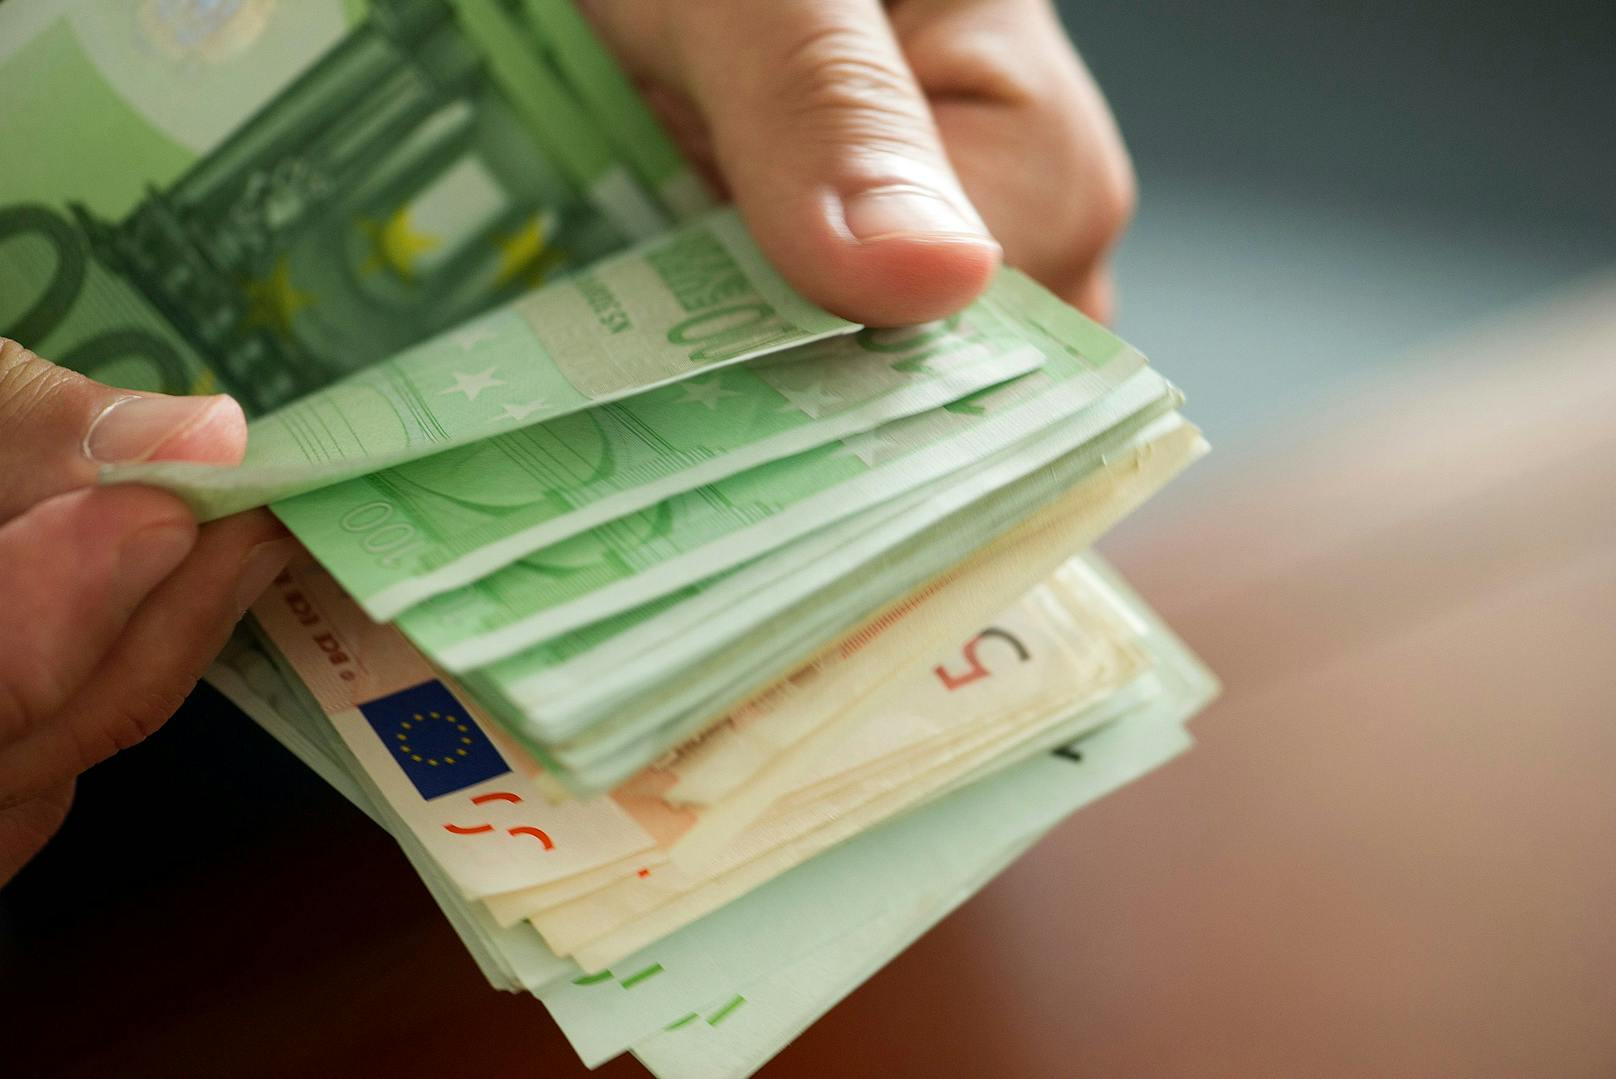 In der Hoffnung ein Erbe in Höhe von 16 Millionen Euro zu erhalten, überwies eine Mühlviertlerin immer wieder Geld auf verschiedene Konten. Dafür hat sie laut Polizei ihre Familie bestohlen.